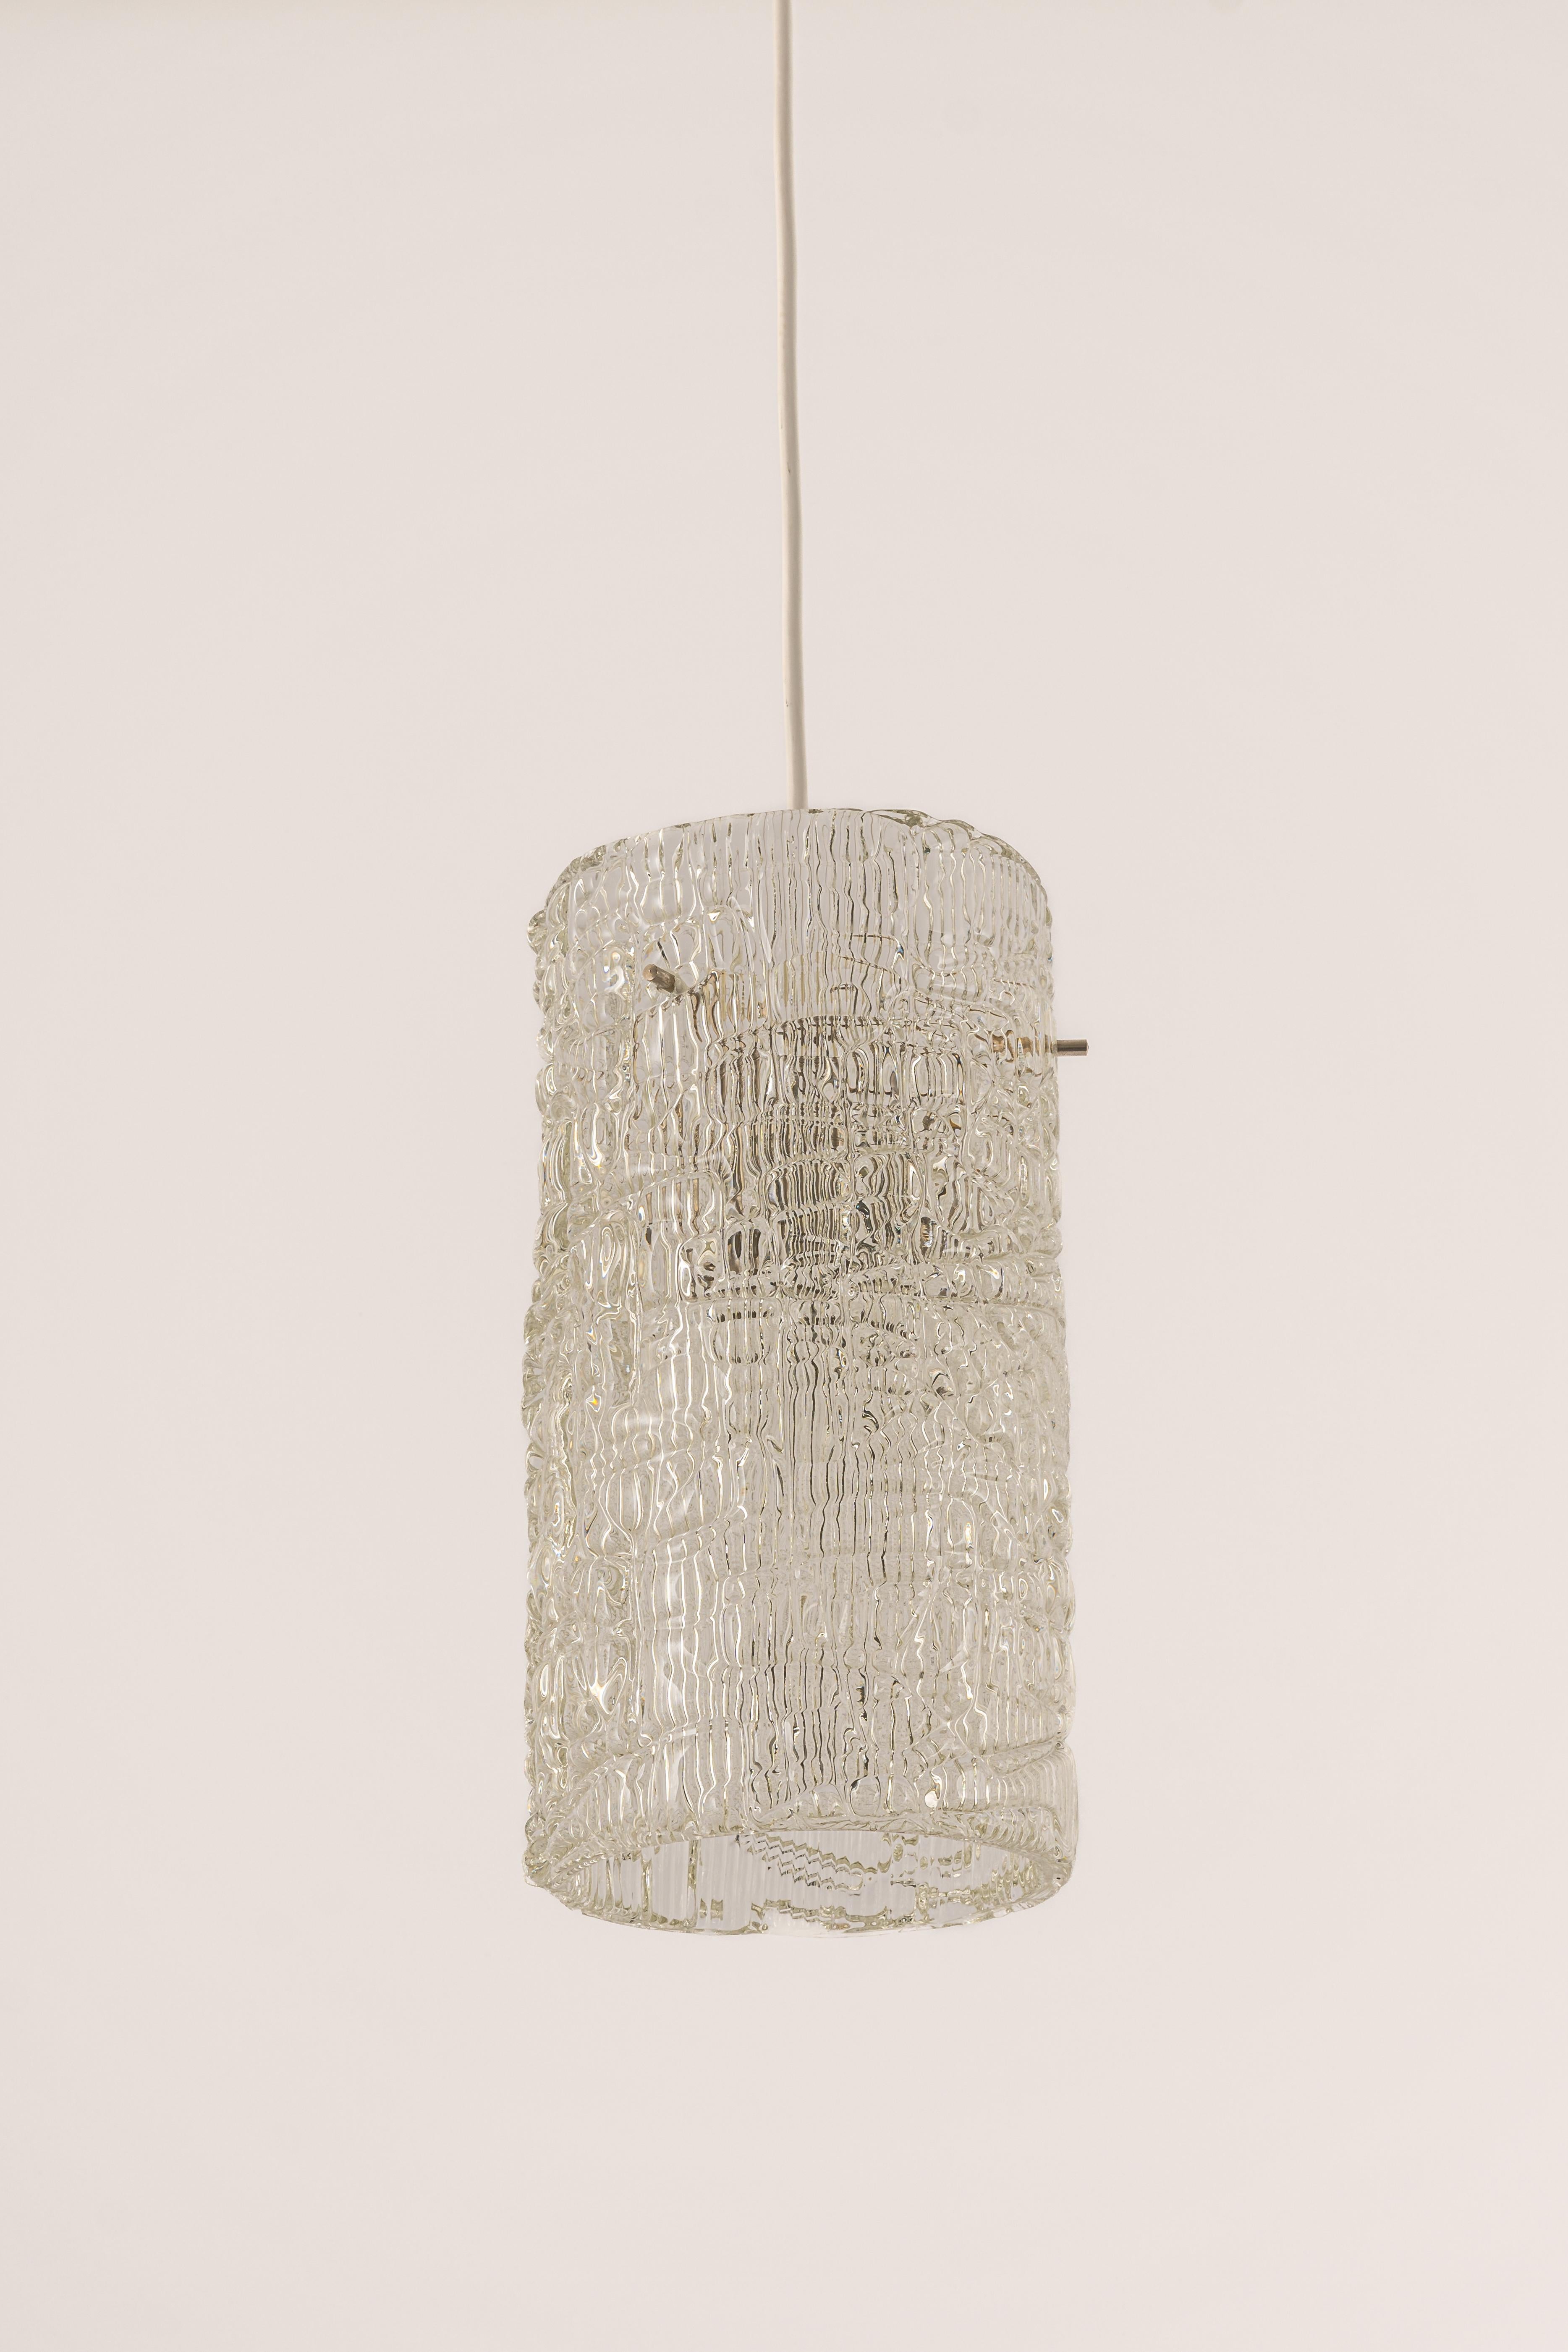 Murano Glass 1 of 3 Petite Murano Pendant Lights by Kalmar, 1960s